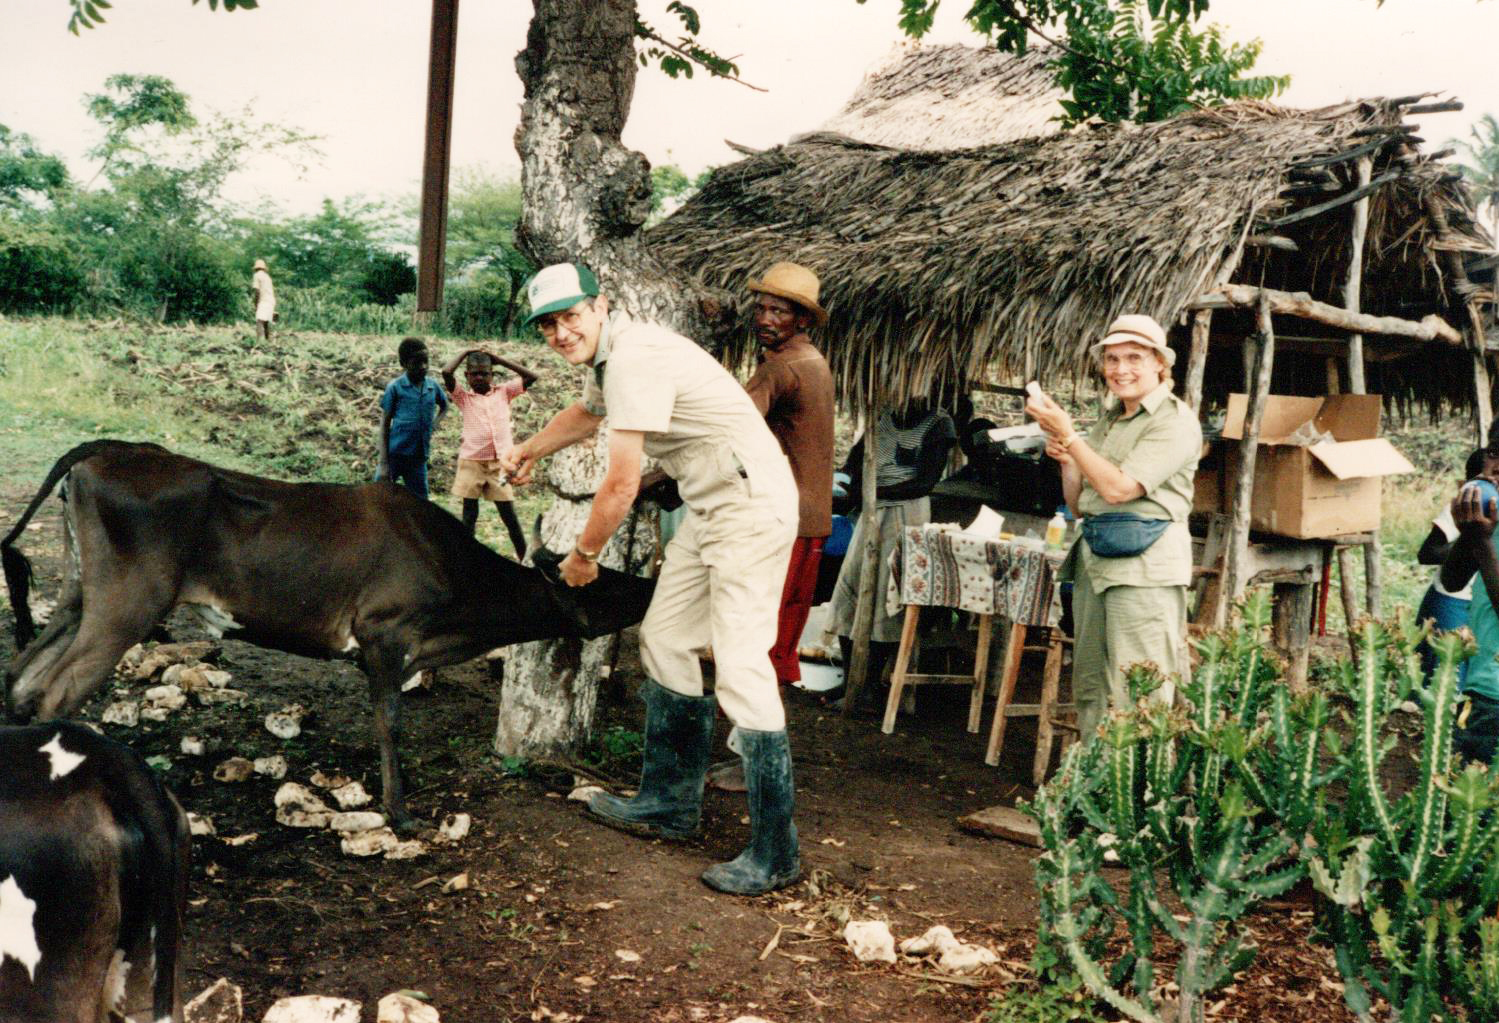 David and Linda Burrichter in Haiti on their first CVM trip